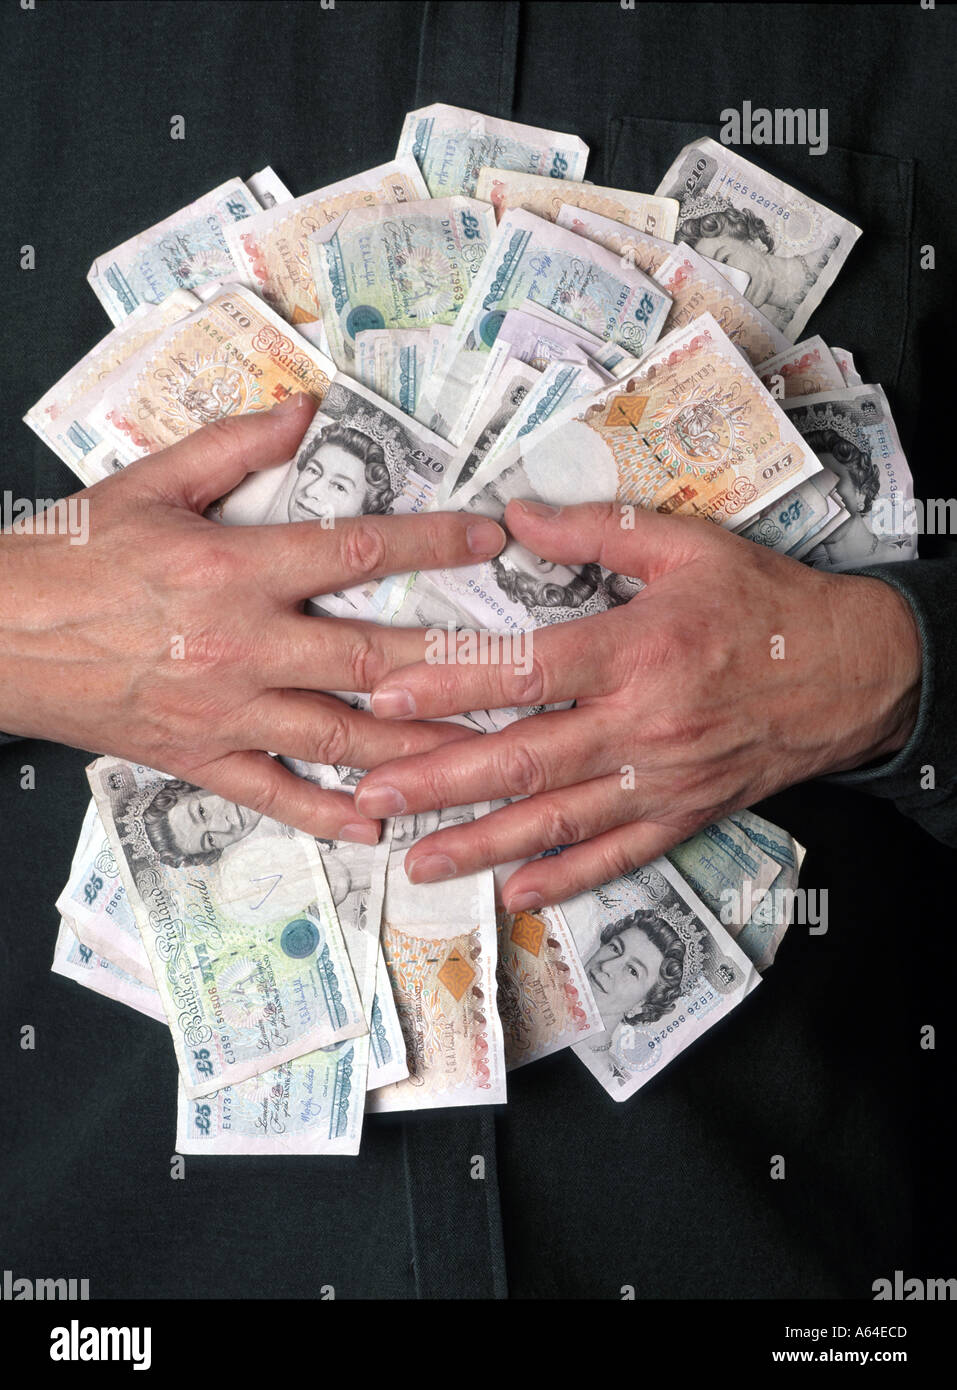 Il banchiere inglese ha le mani afferrato le banconote in contanti con sterlina inglese concetto finanziario "gatto grasso" "un sacco di soldi" "afferrare ciò che si può" avidità e avidità Foto Stock